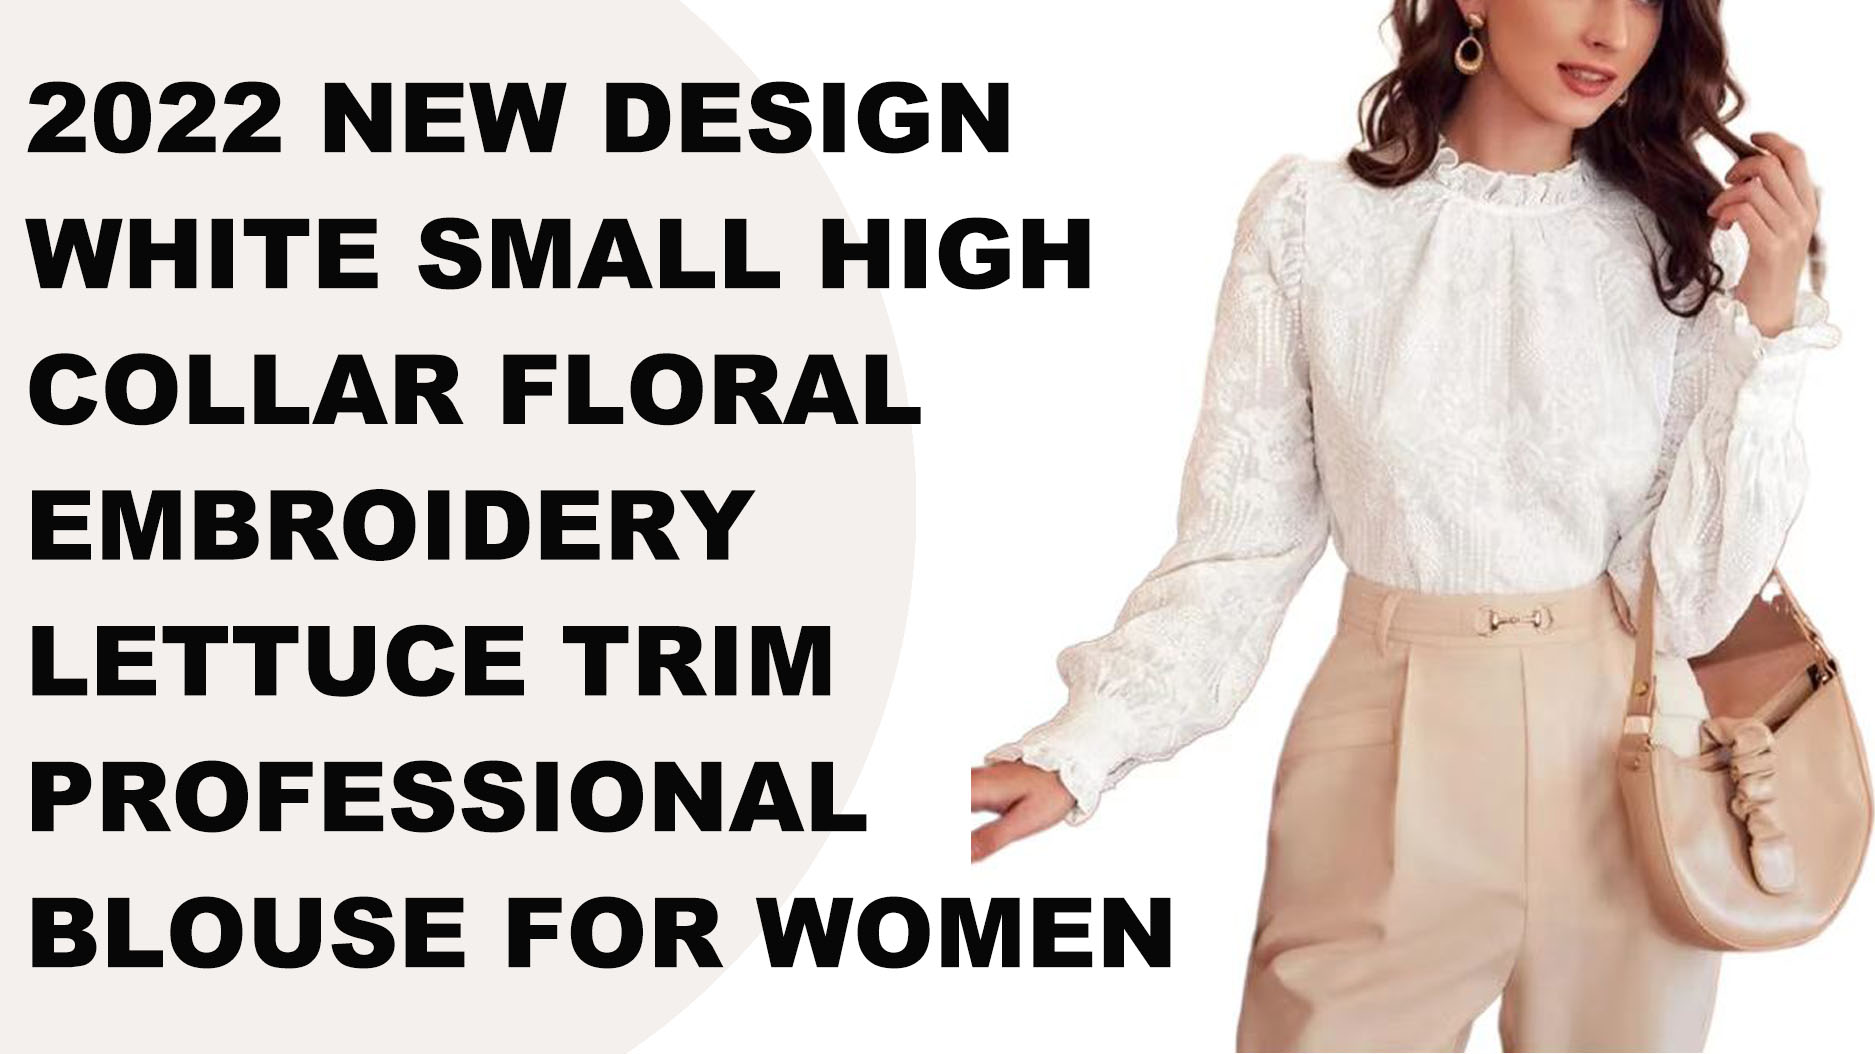 2022 Neues Design, weiße, kleine, hochgeschlossene, florale Stickerei, Salatbesatz, professionelle Bluse für Damen